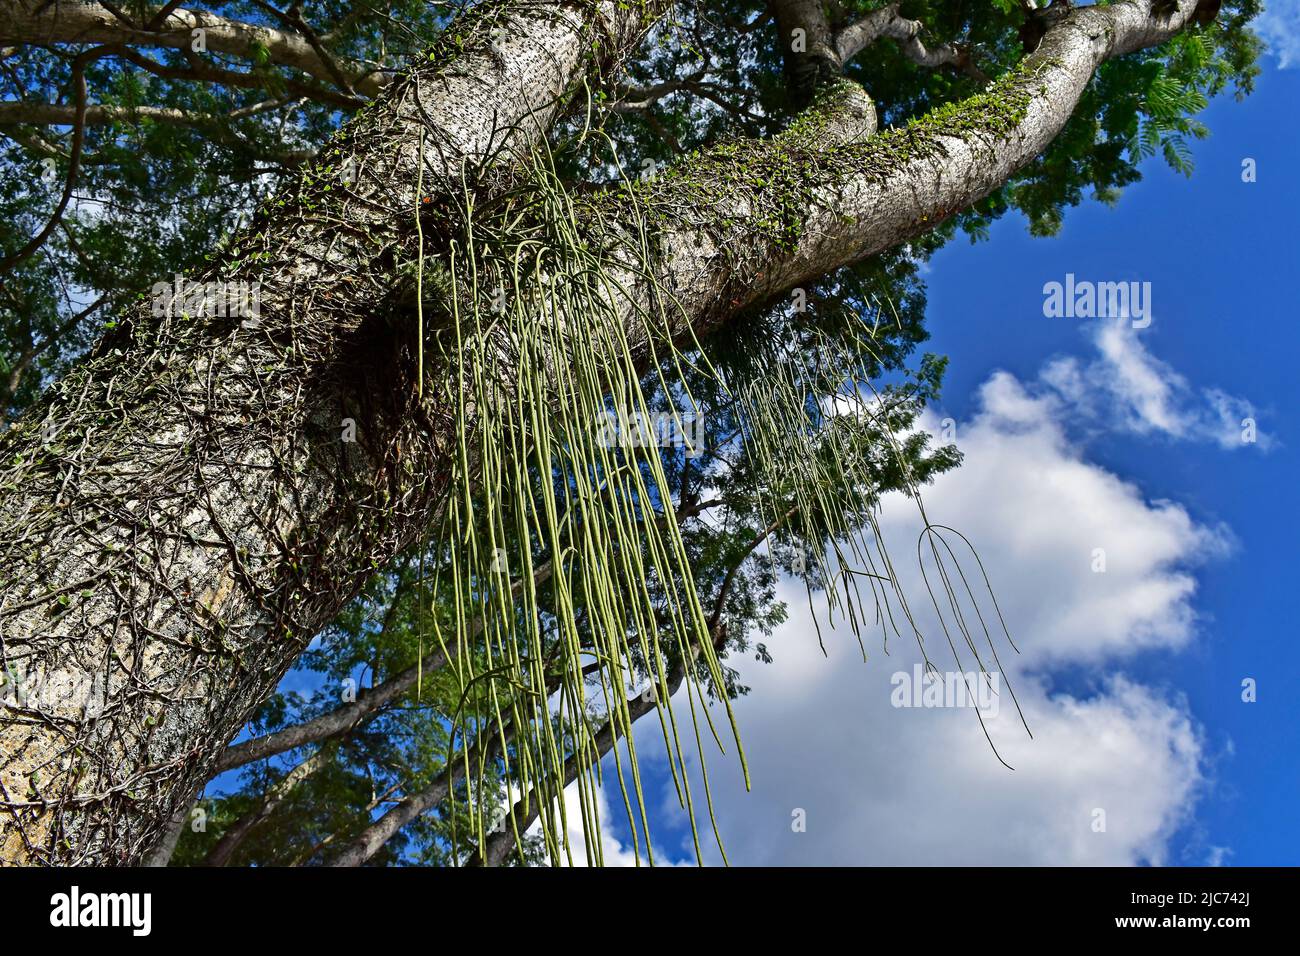 Cactus de muérdago en rama del árbol (Rhipsalis baccifera) Foto de stock